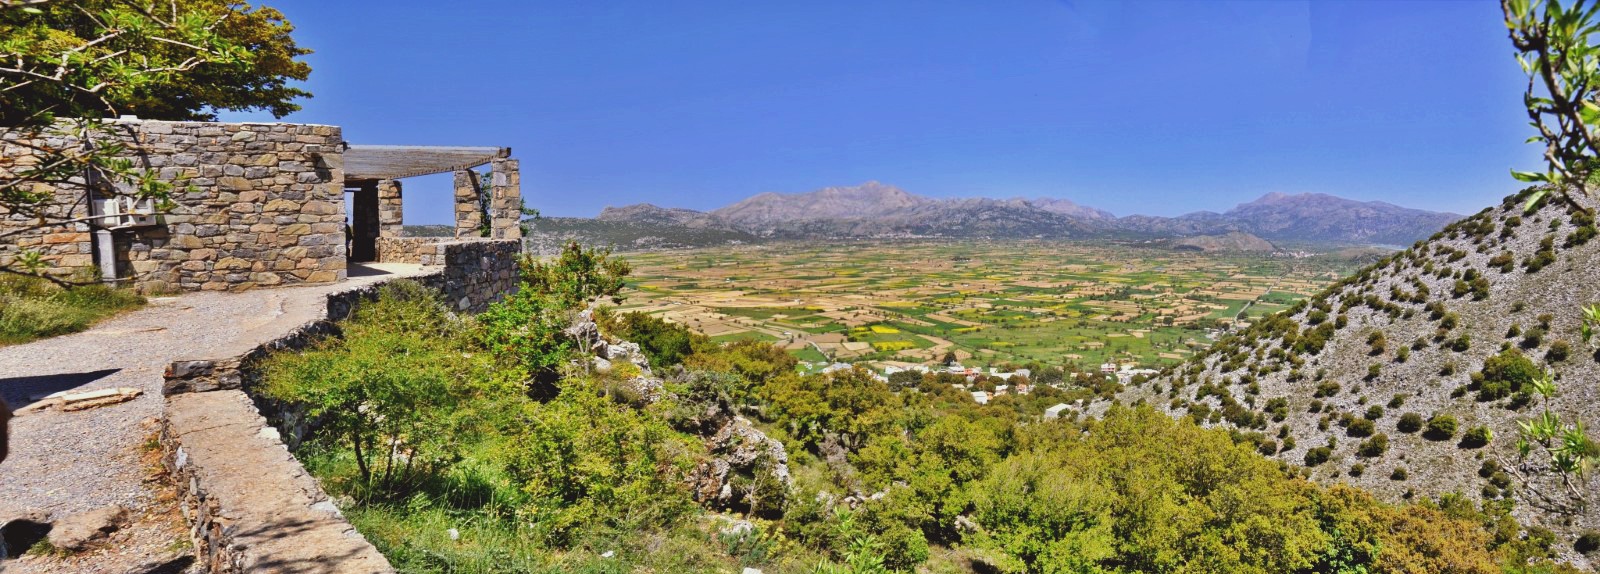 Η θέα του λασιθιώτικου κάμπου από το Δικταίο Άντρο- View of lasithi plain from the Dictaean Cave